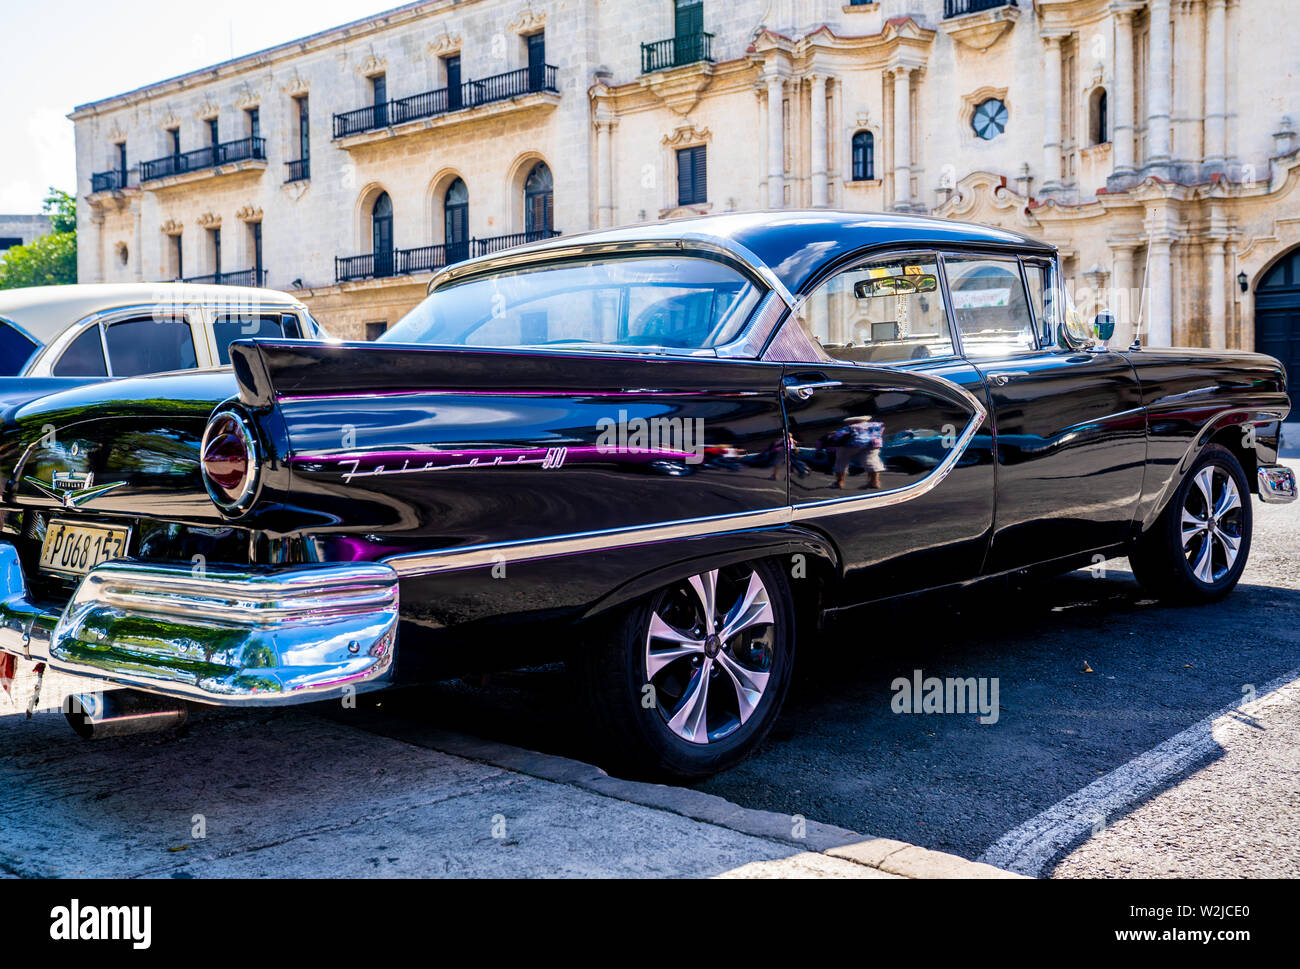 Die Altstadt von Havanna, Kuba - Januar 2, 2019: eine schöne amerikanische Wagen in den Straßen von Havanna, Kuba geparkt. Stockfoto